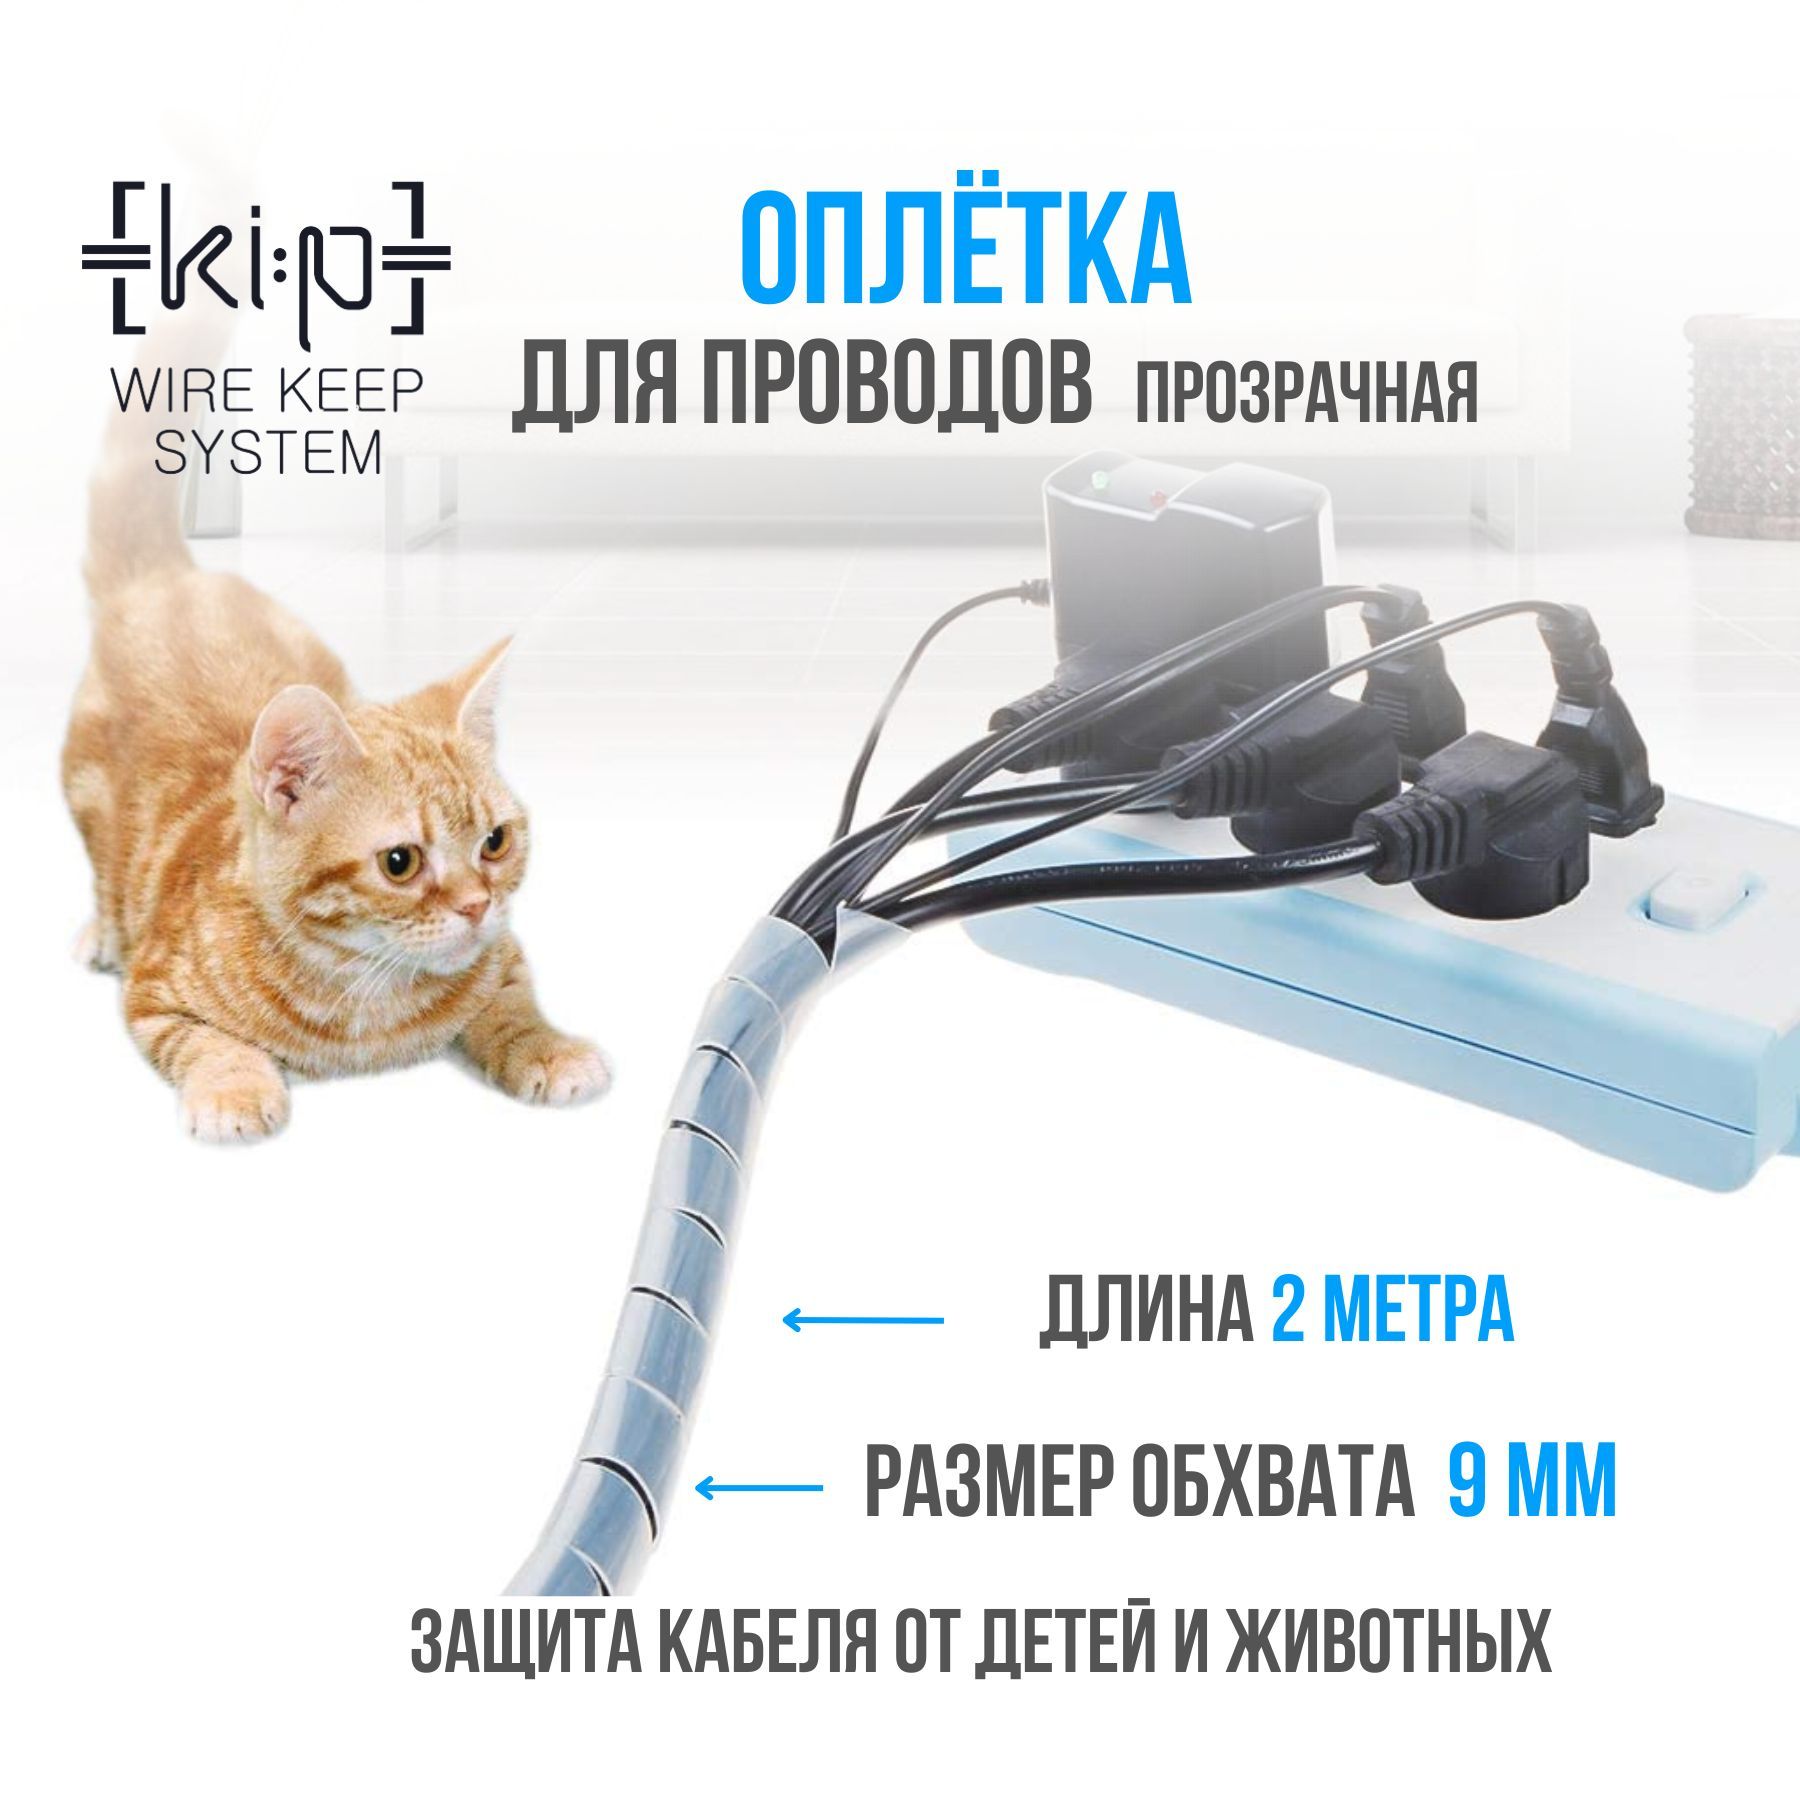 Как отучить кошку грызть провода - PetPlays - Лучшие домашние животные